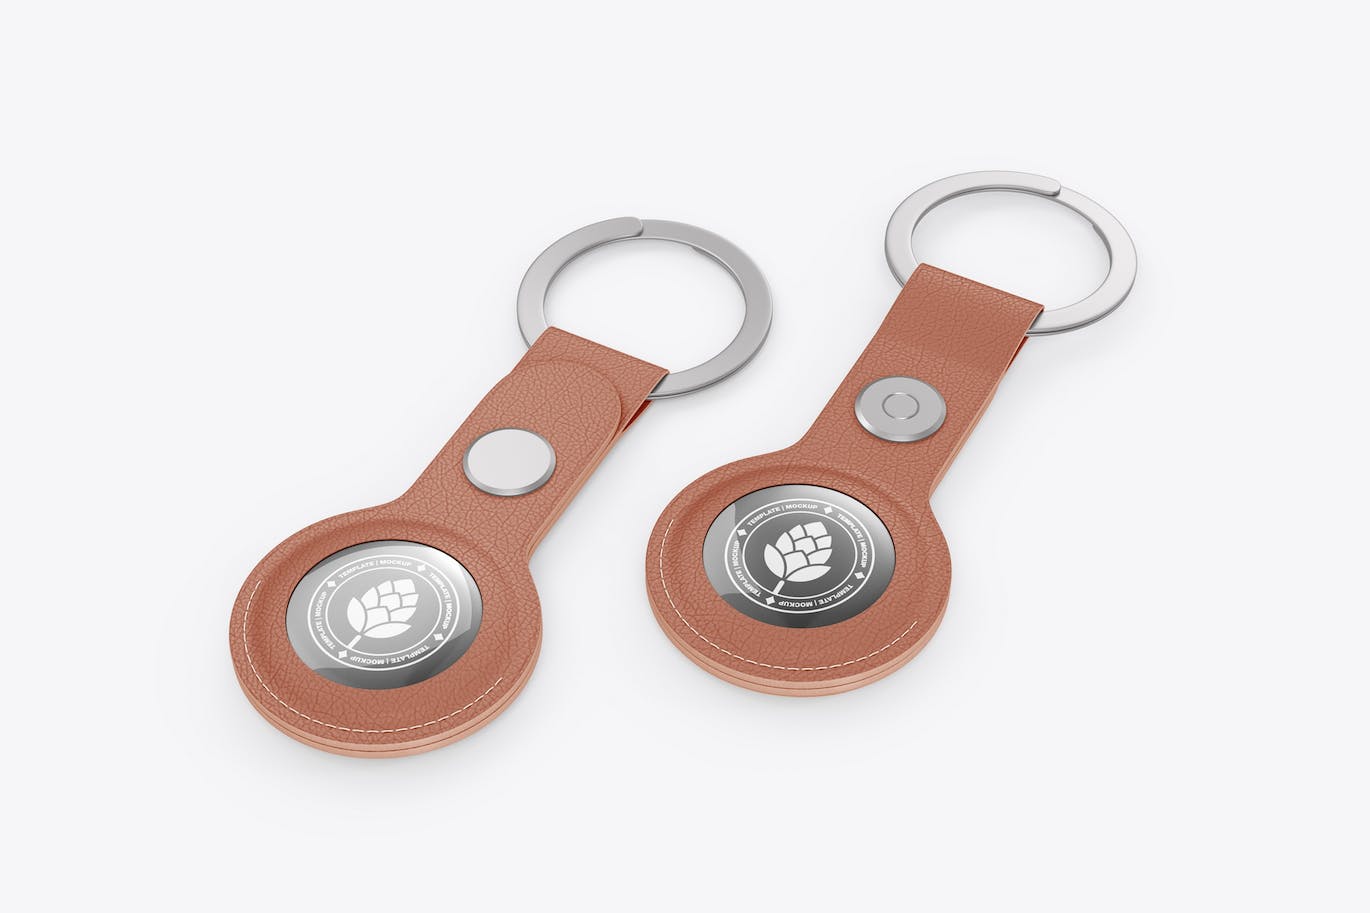 皮革钥匙扣标签设计样机 Leather Keychain and Electronic Tag Mockup 样机素材 第1张